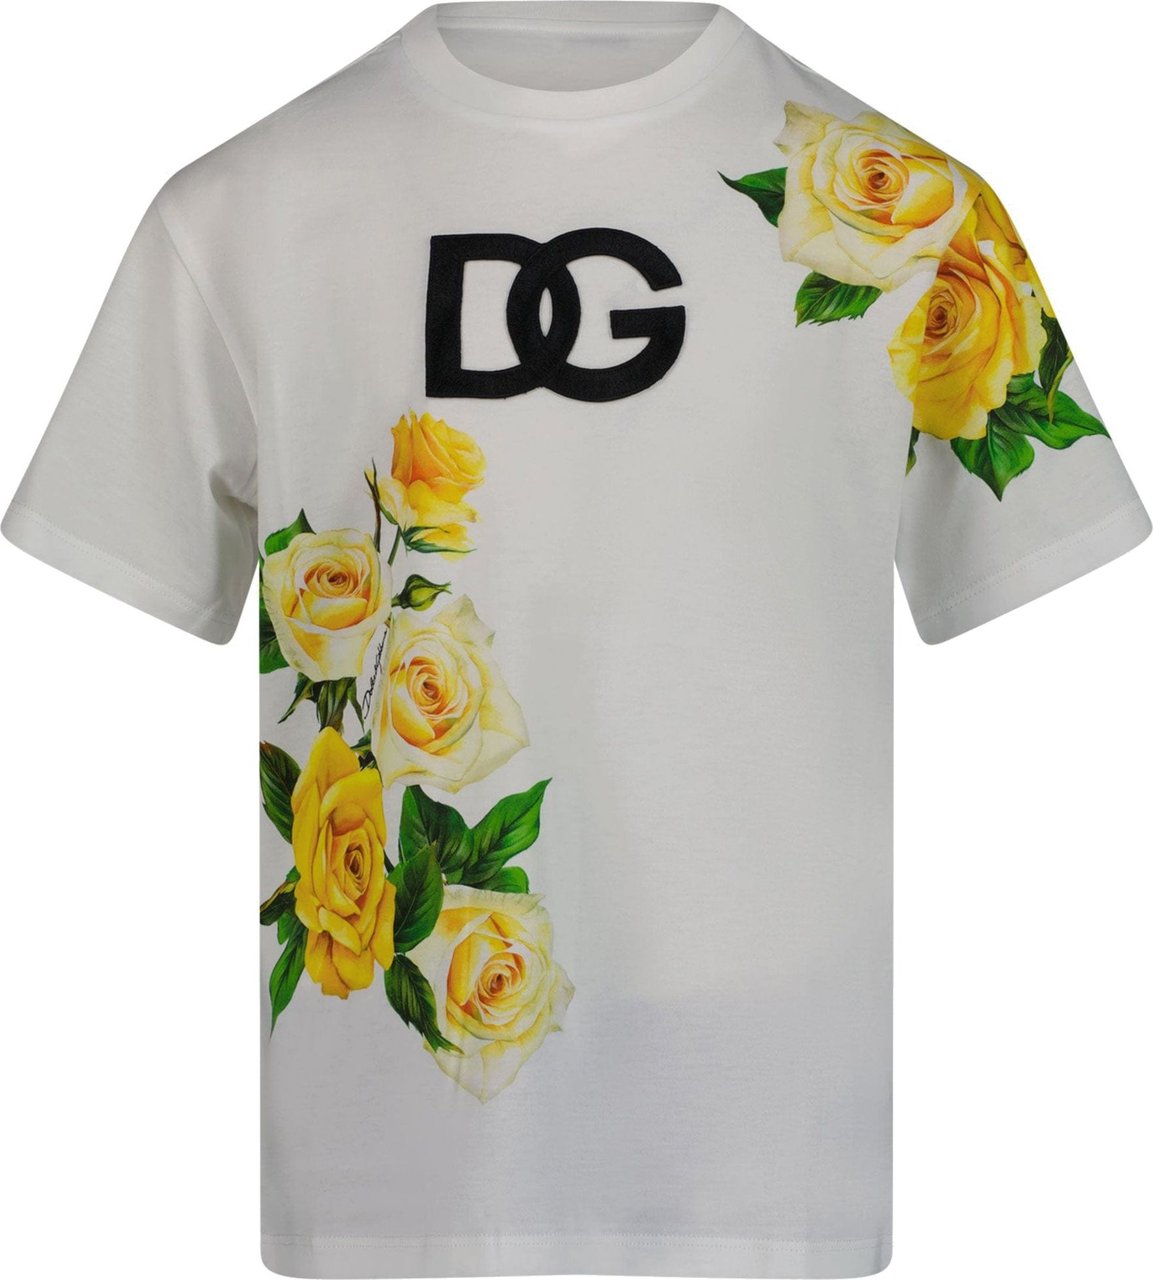 Dolce & Gabbana Dolce & Gabbana Kinder T-Shirt Wit Wit